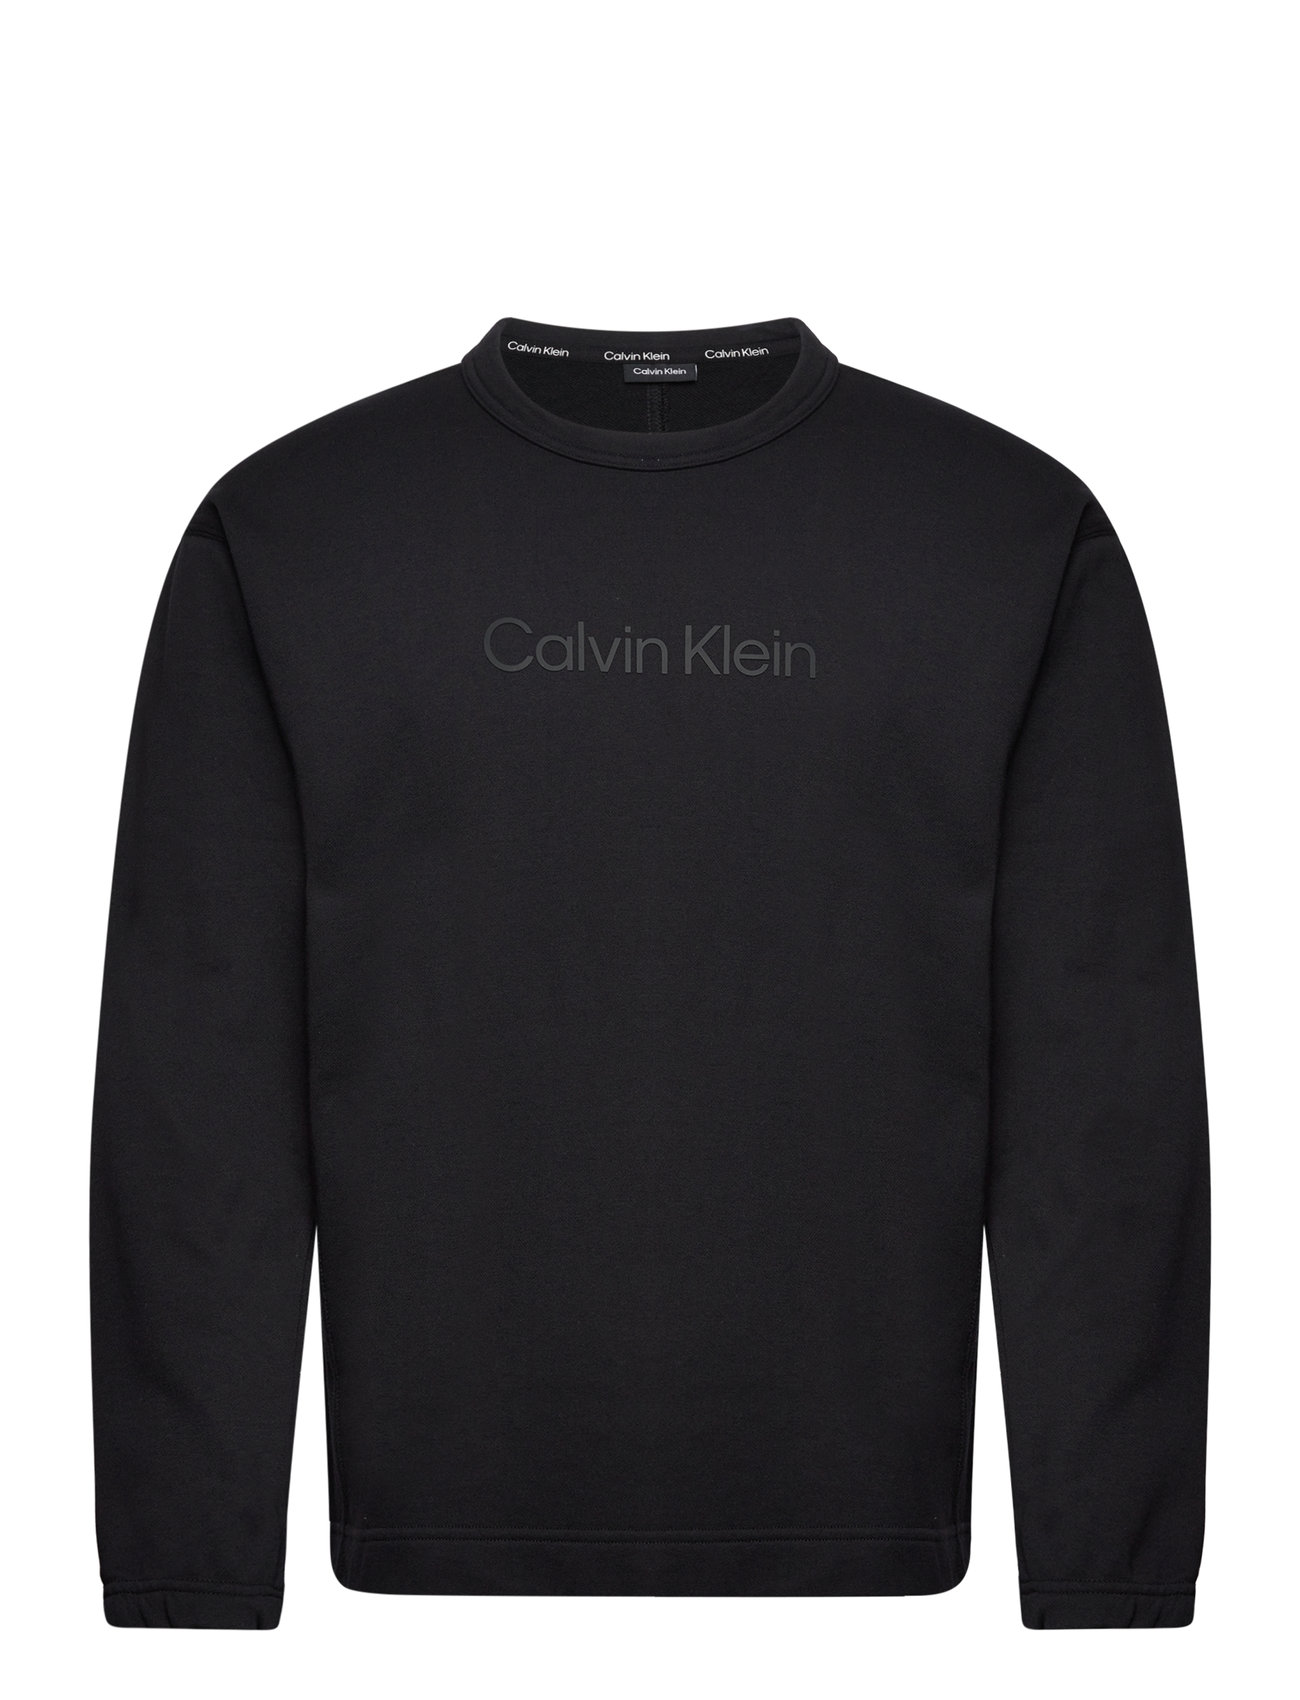 einkaufen & Booztlet Performance - – sweatshirts Klein Calvin Pw – kapuzenpullover bei Pullover